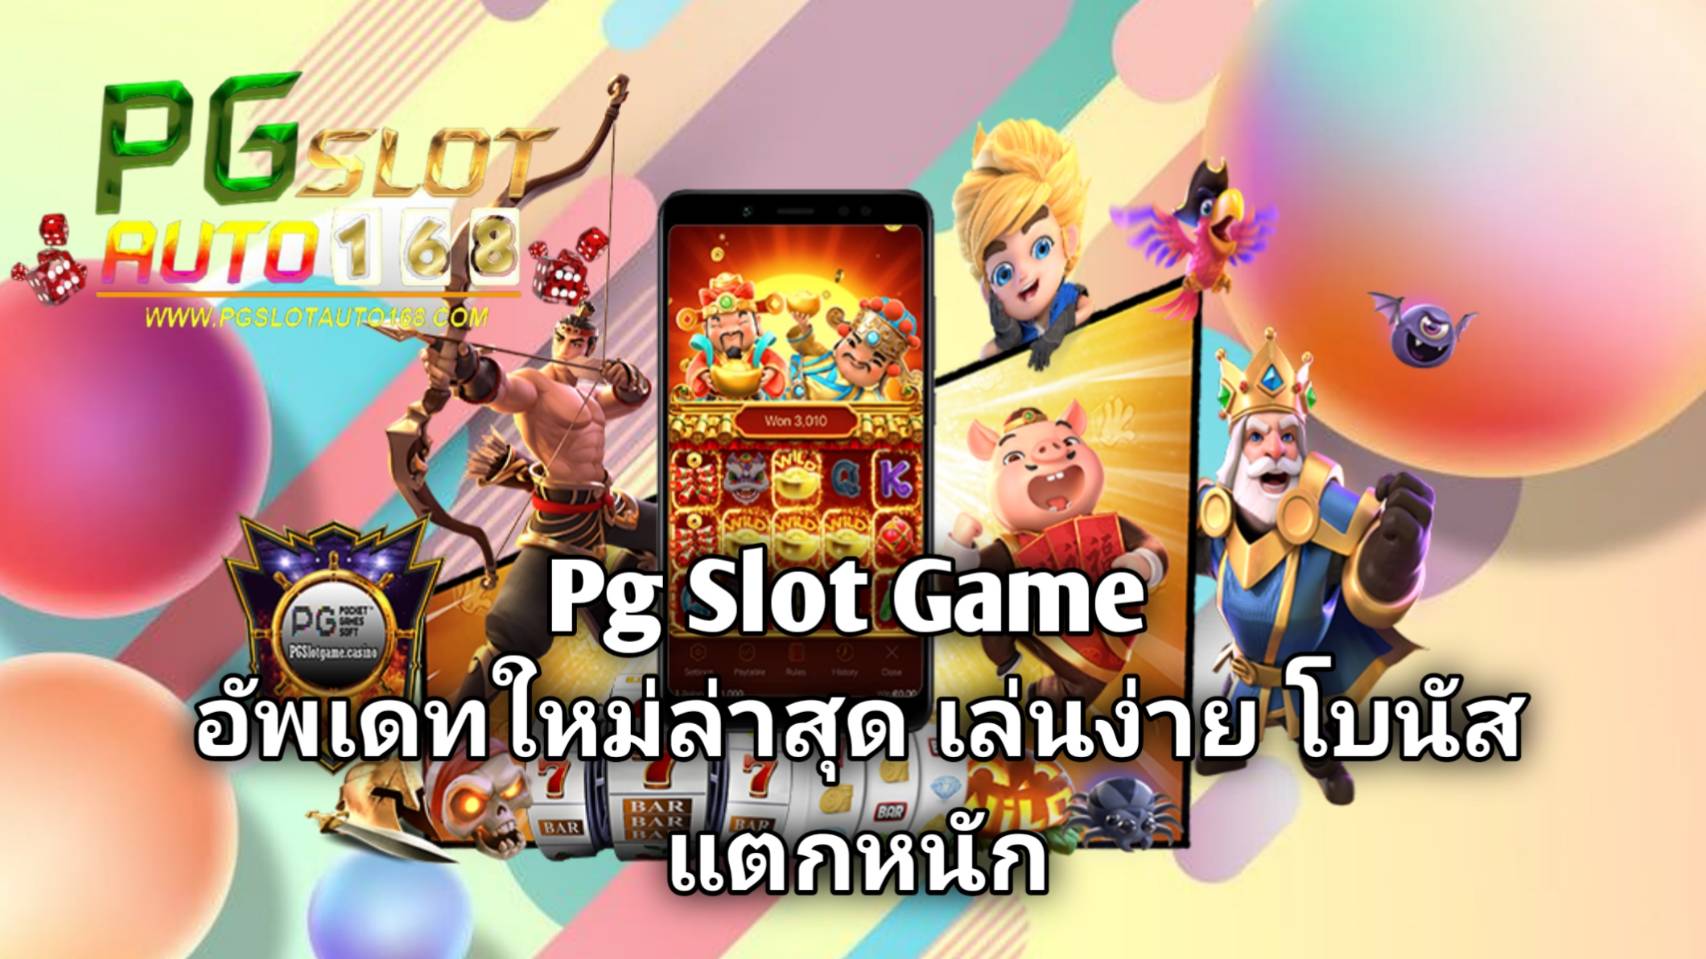 Pg-Slot-Game